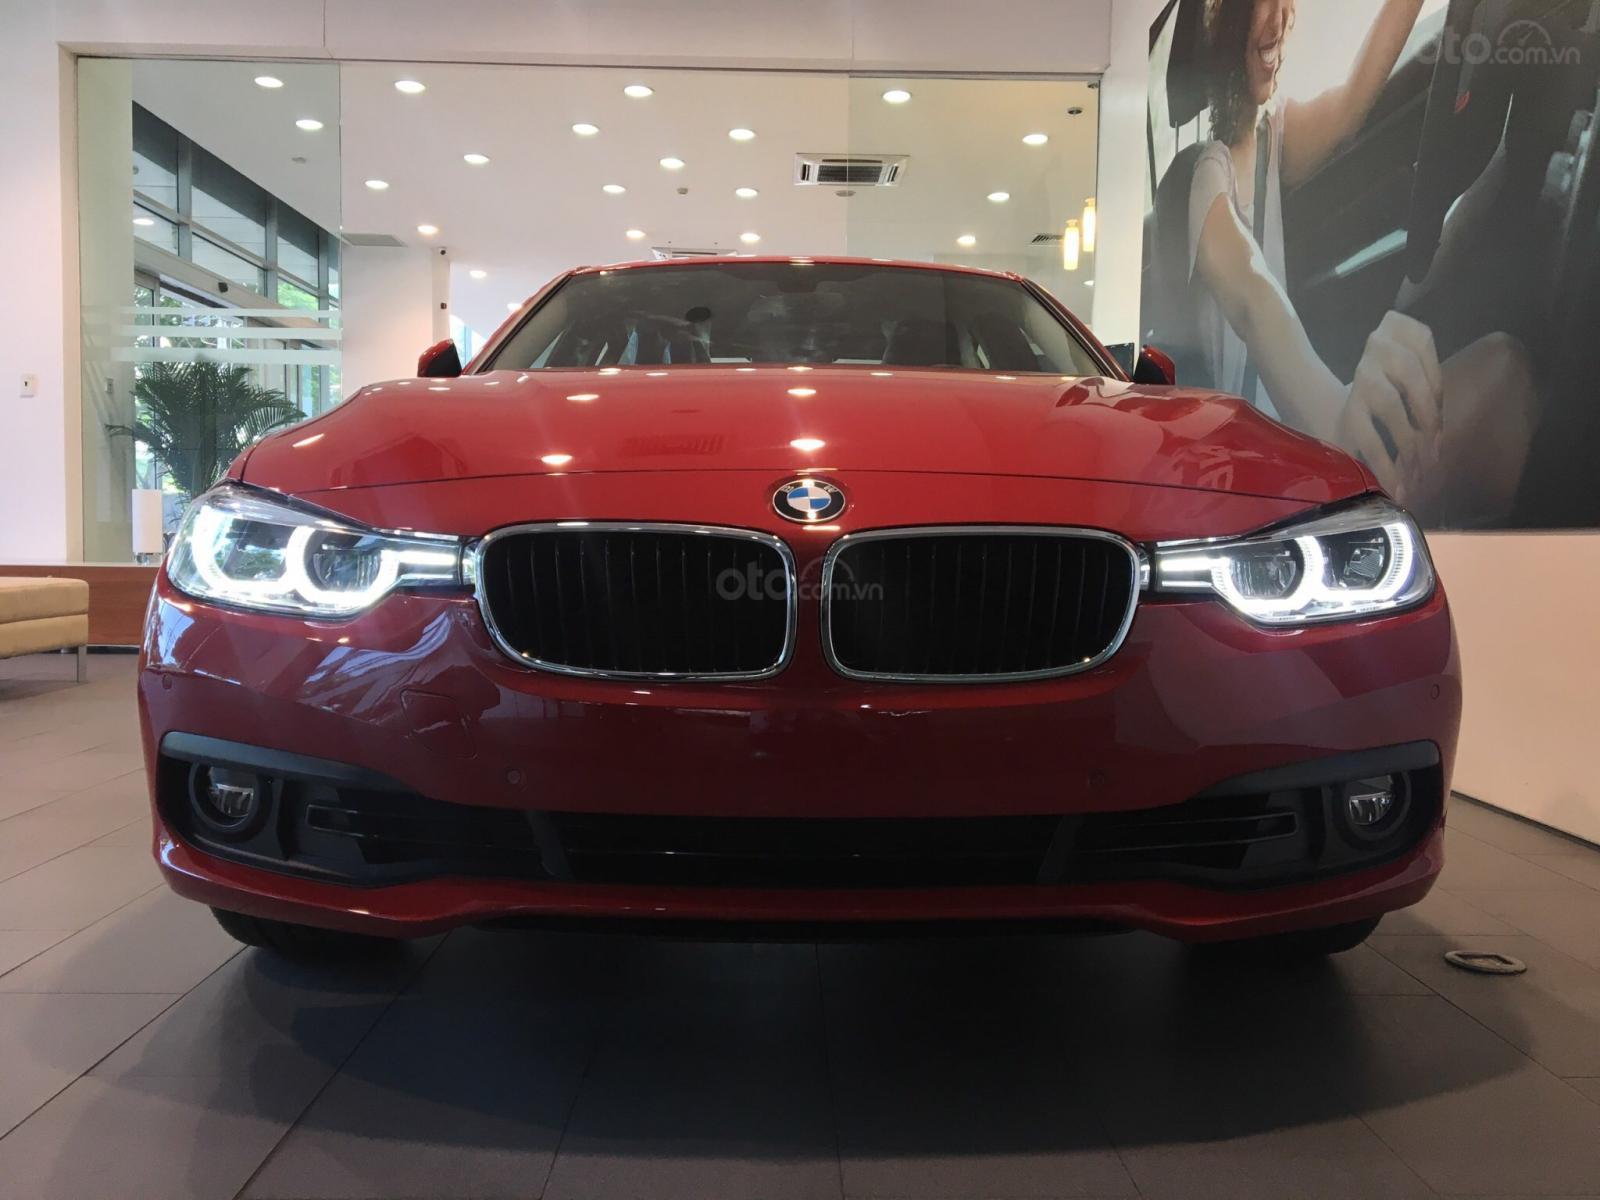 Đánh giá xe BMW 320i 2019 về thiết kế đầu xe.